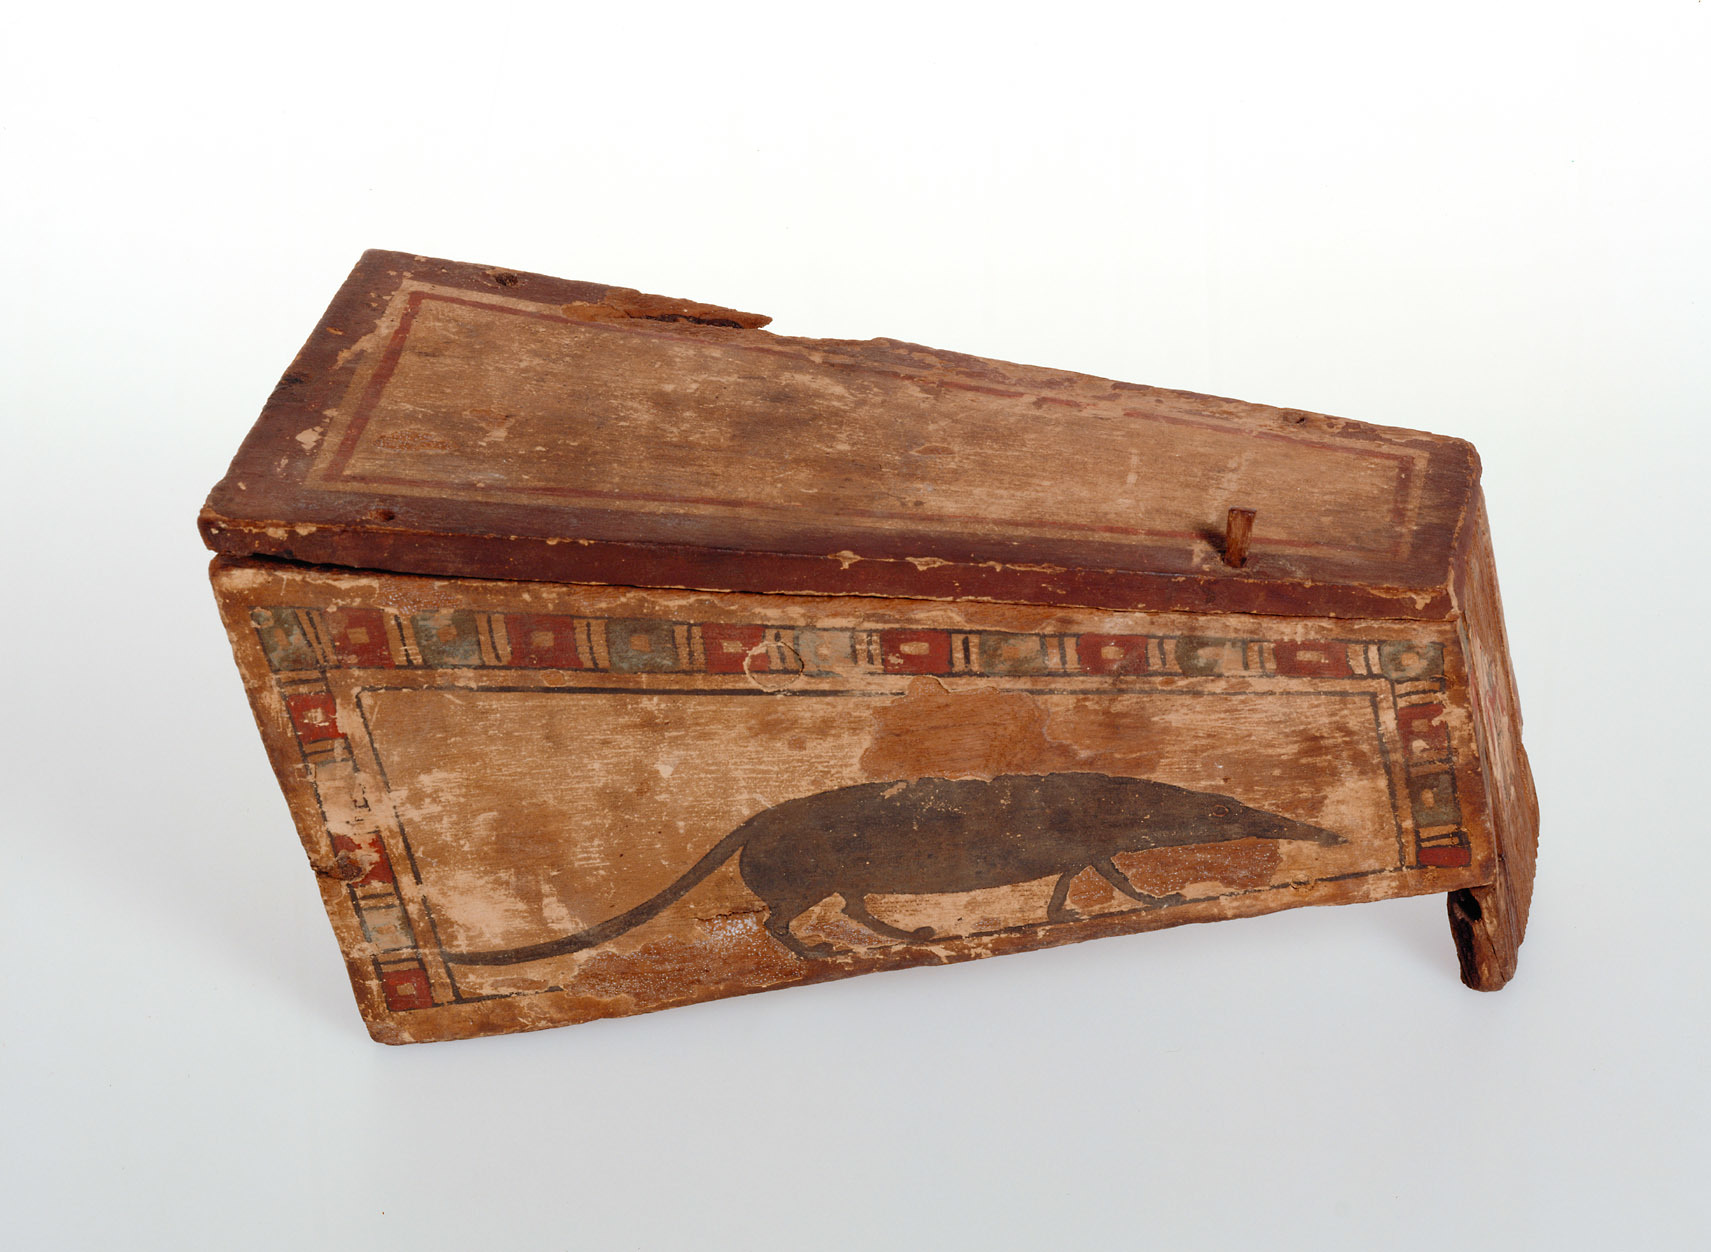 Spitzmaus by Unknown Artist - 4th century BC - 11,4 x 21,9 x 11,6 cm Kunsthistorisches Museum